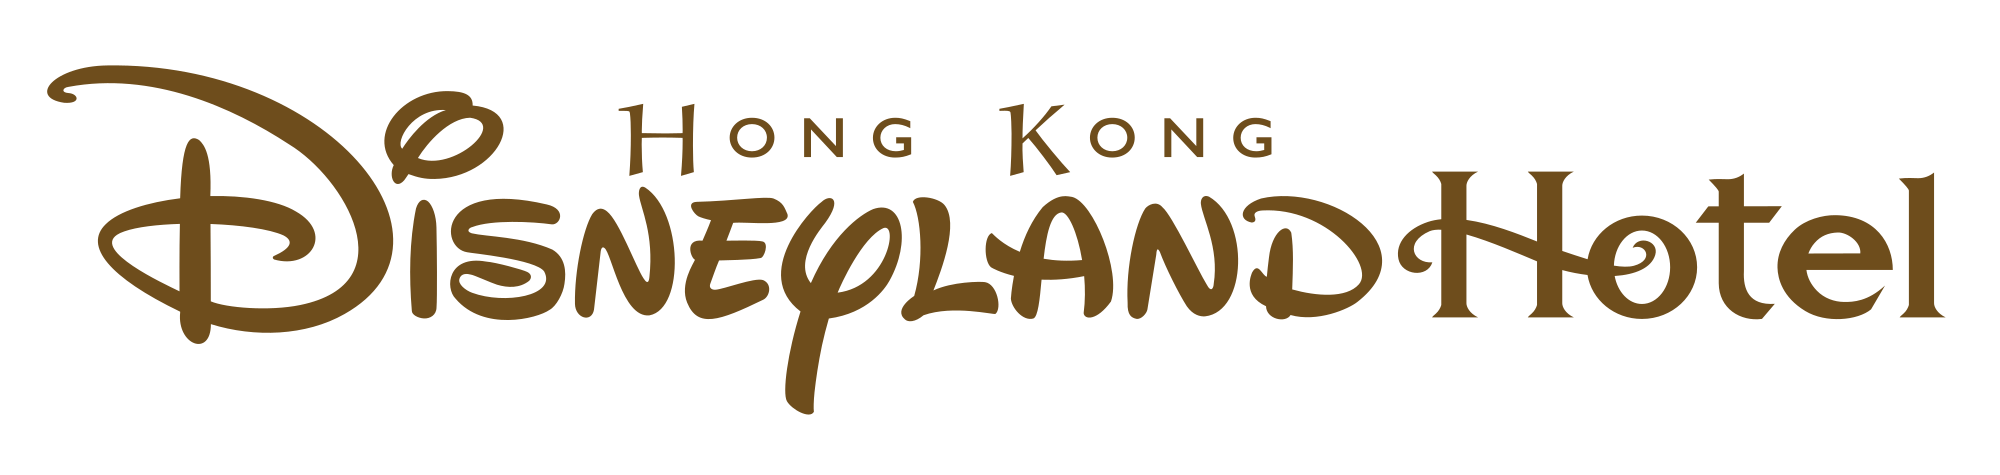 Hong Kong Disneyland Logo - File:Hong Kong Disneyland Hotel logo.svg - Wikimedia Commons